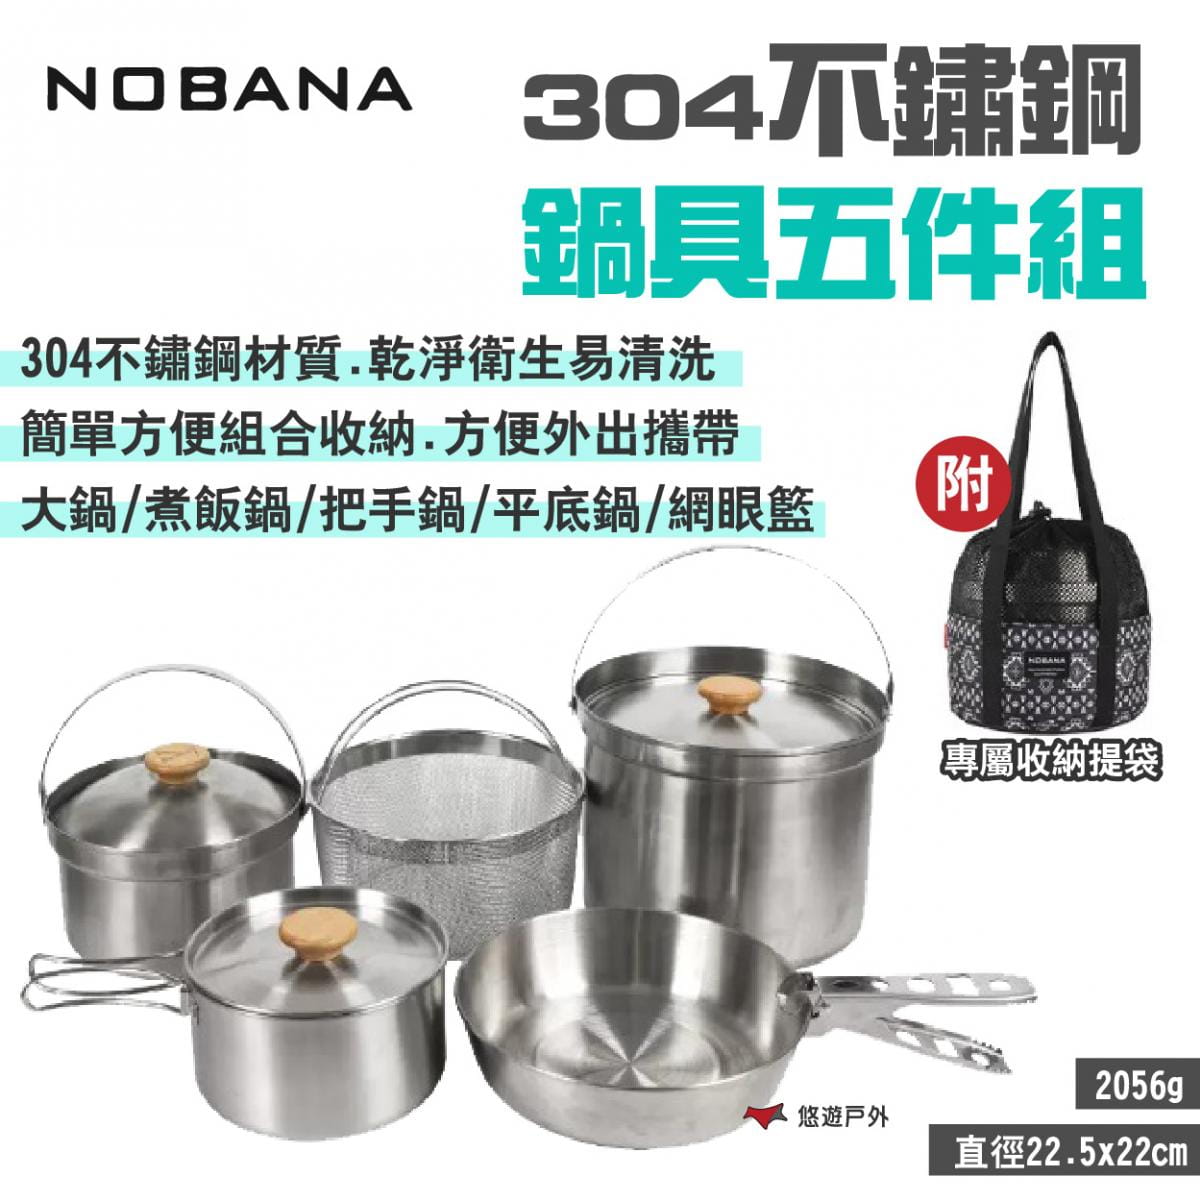 【NOBANA】304不鏽鋼鍋具五件組 悠遊戶外 1